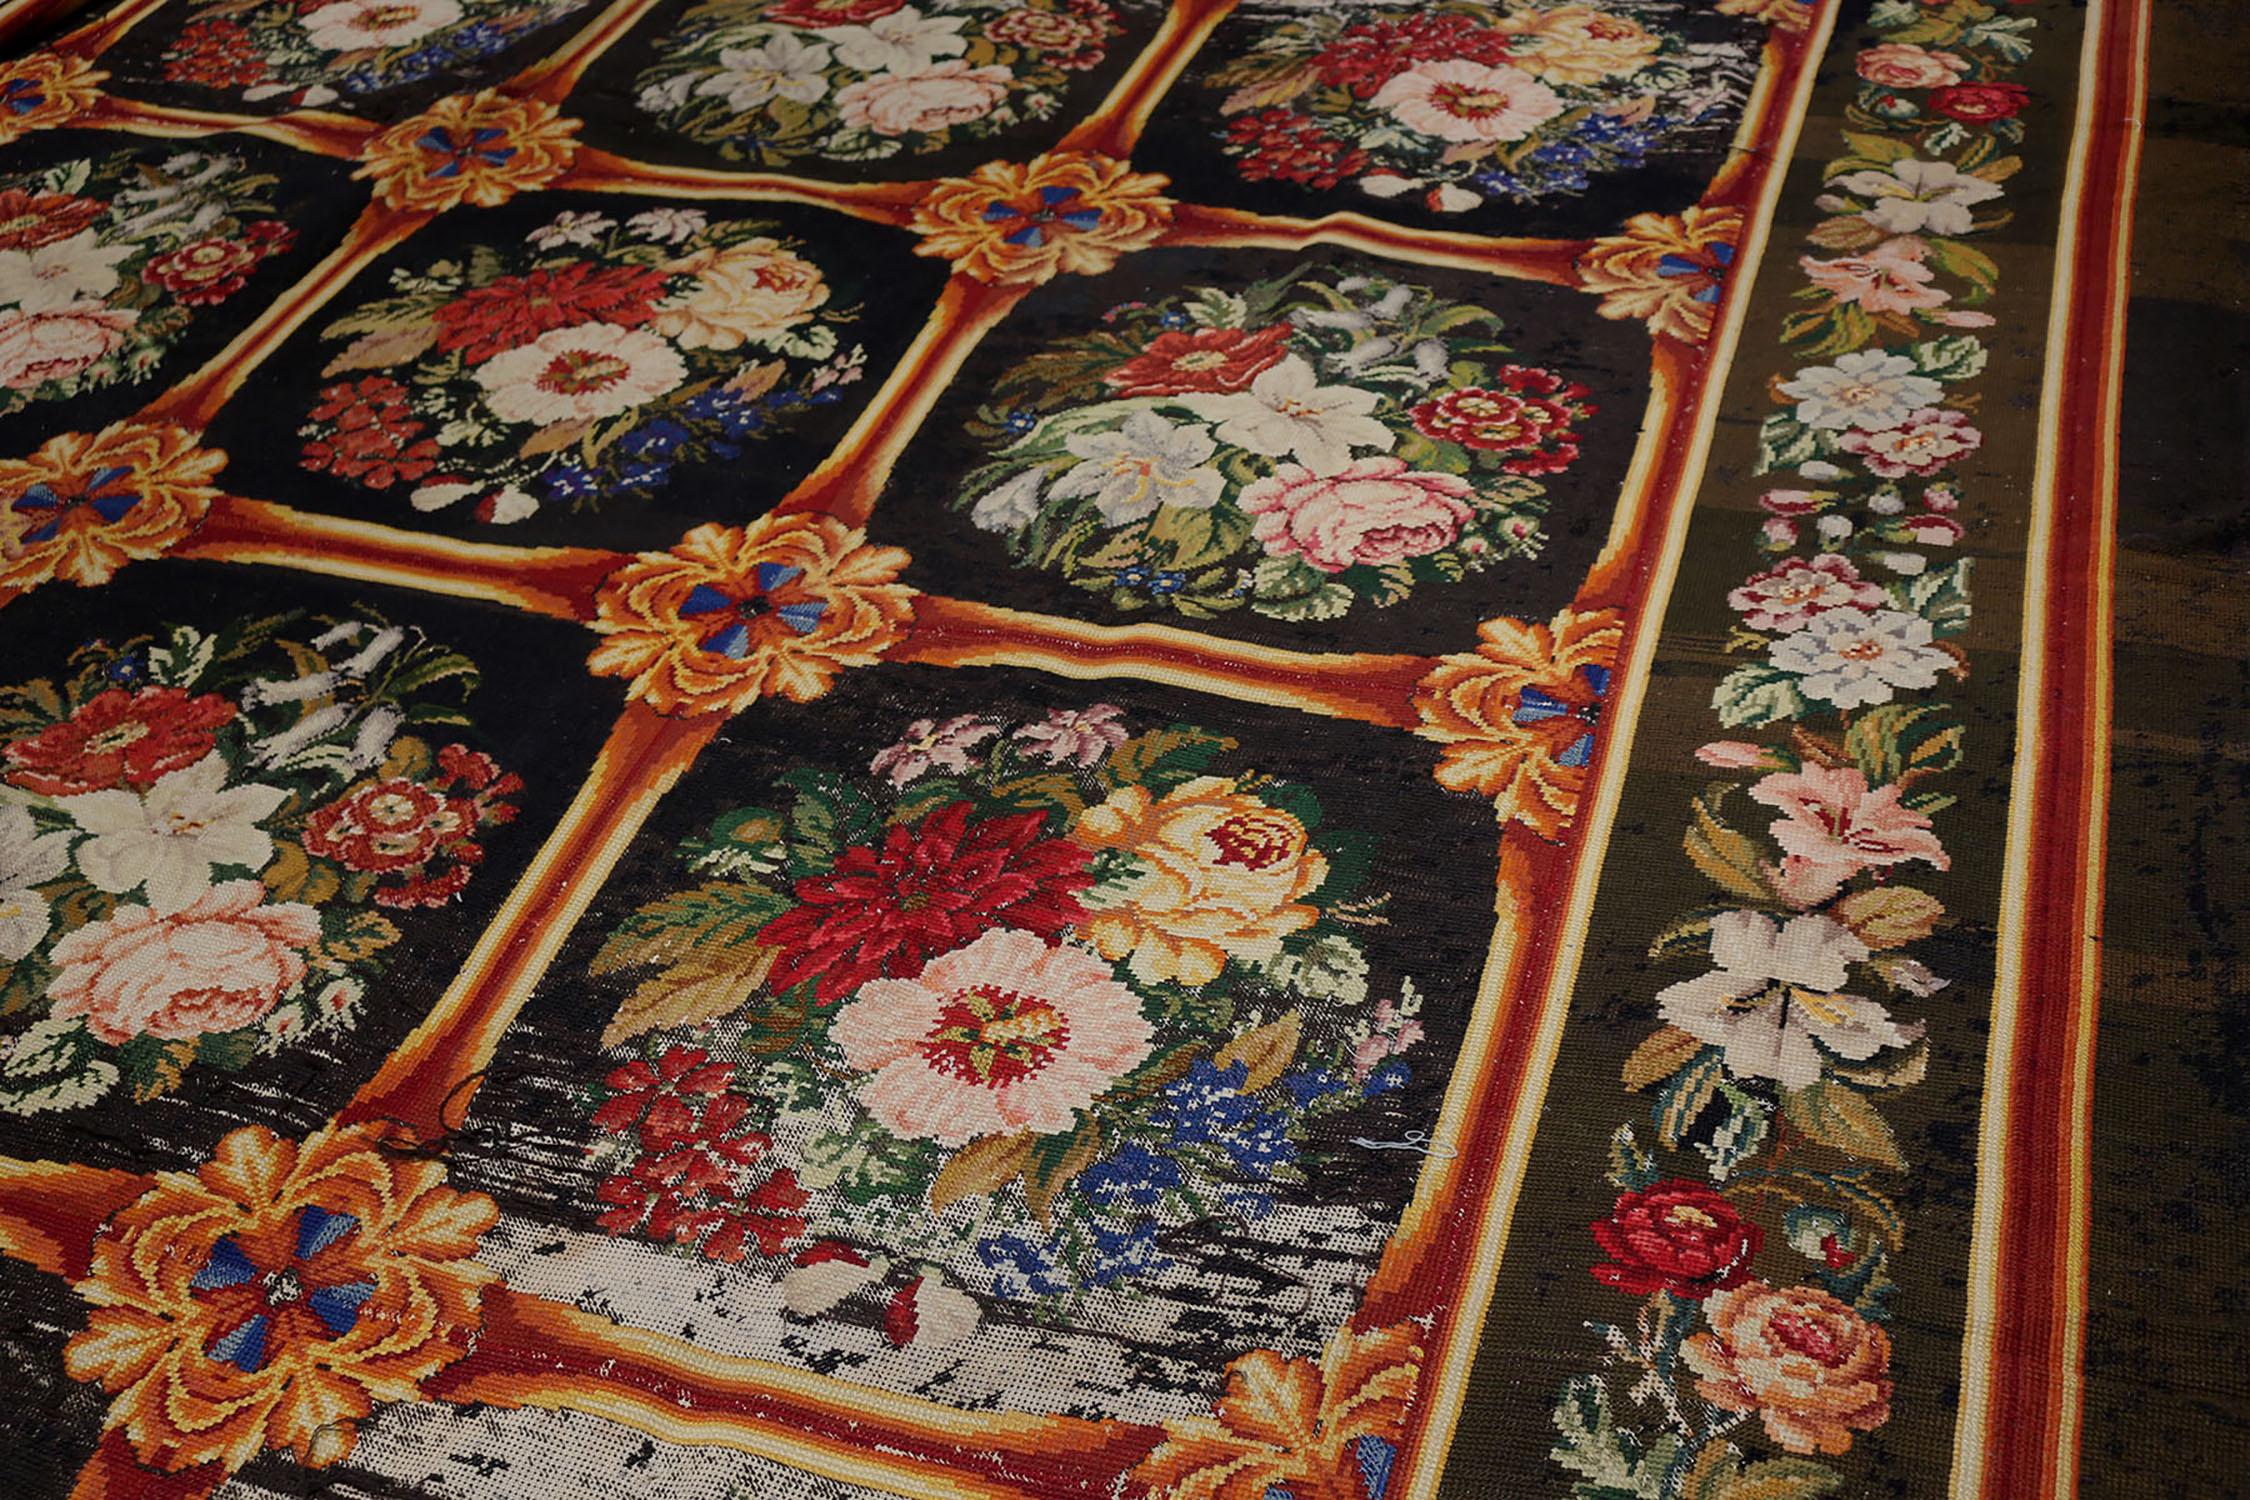 Ein englischer Nadelspitze-Teppich im Format 13x15 aus den 1920er Jahren, der die Antique & Vintage-Kollektion von Rug & Kilim ergänzt. Das reichhaltige Stück zeugt von einer einzigartigen Abkehr von der traditionellen Wiederholung und ergänzt die